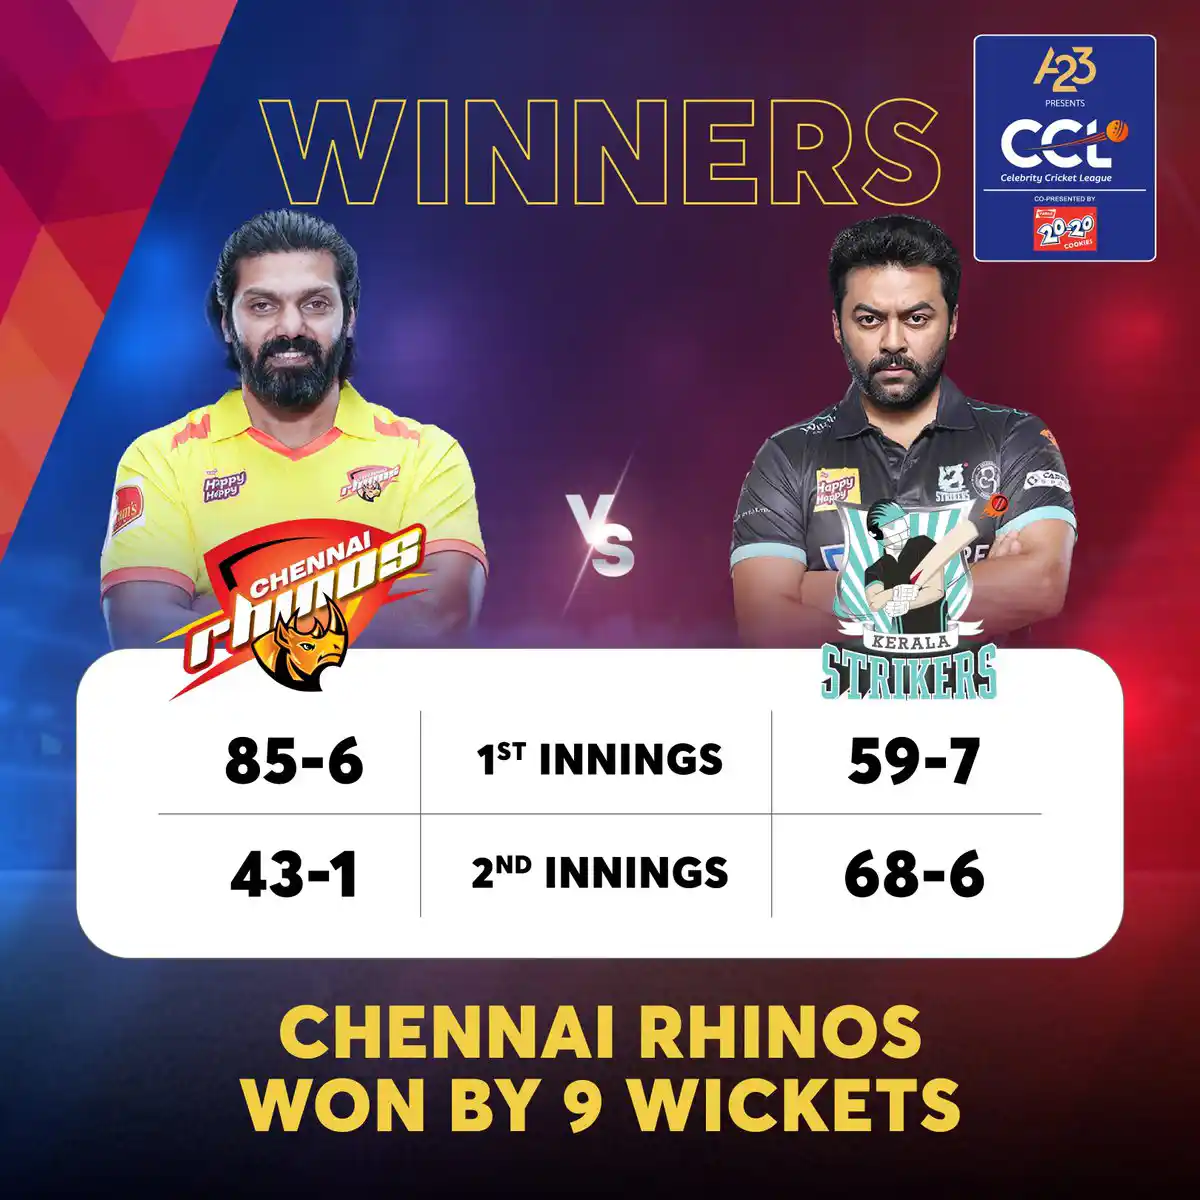 Chennai Rhinos won by 9 wickets